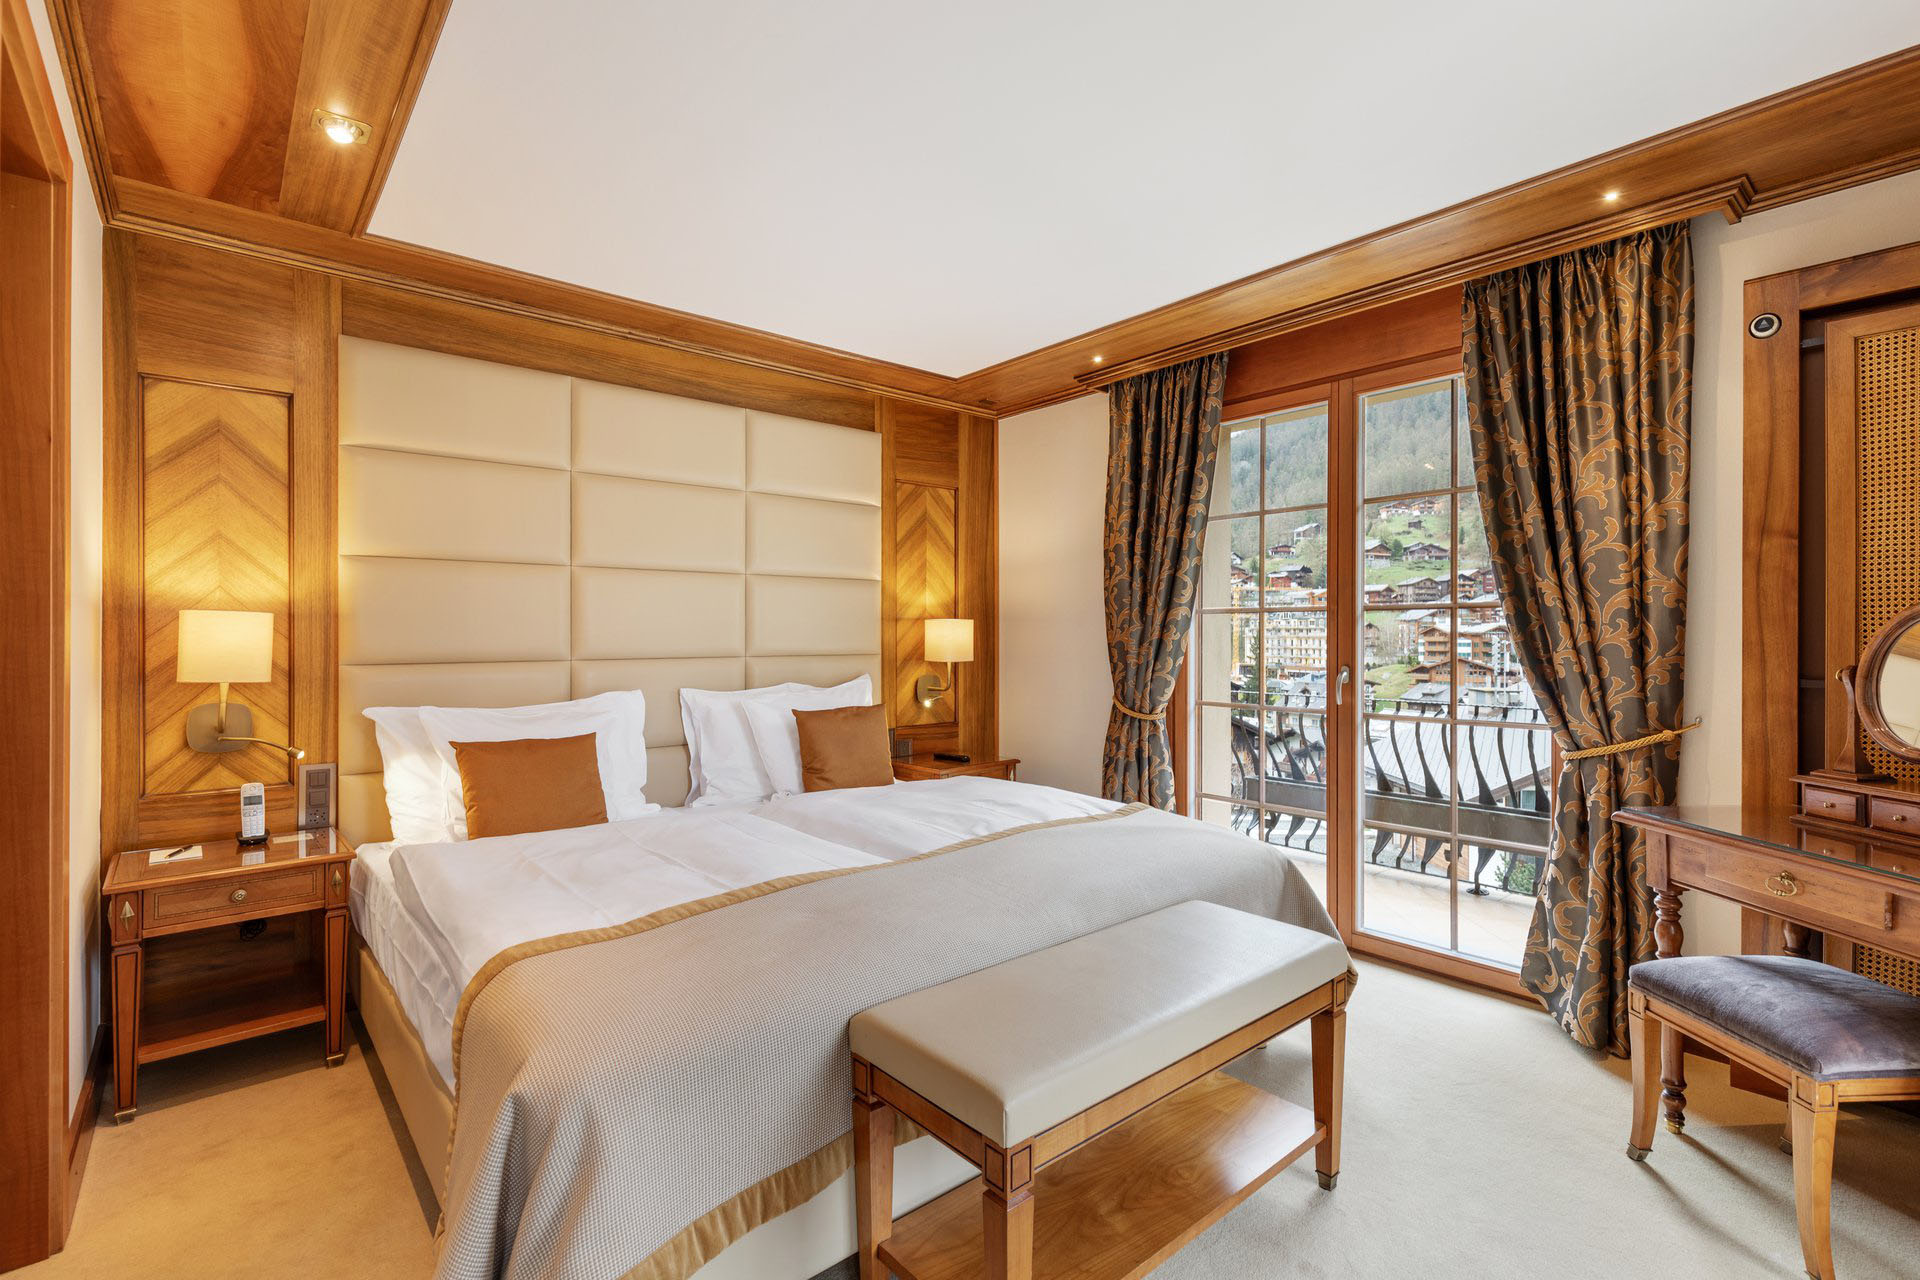 Grand Suite Matterhorn Bed - Grand Hotel Zermatterhof